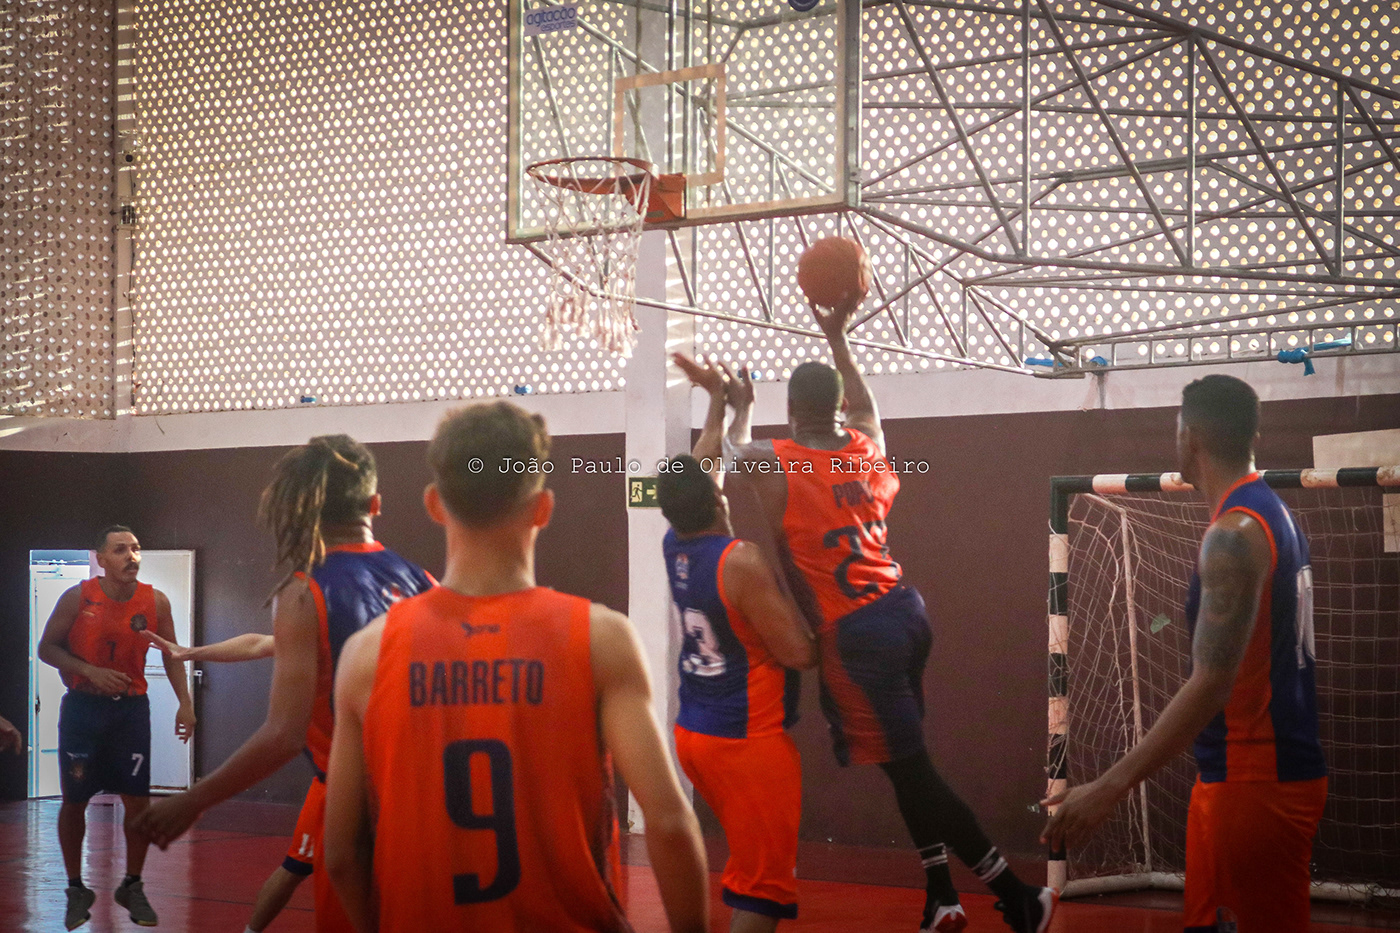 basquete basketball sports Photography  Fotografia cobertura fotográfica